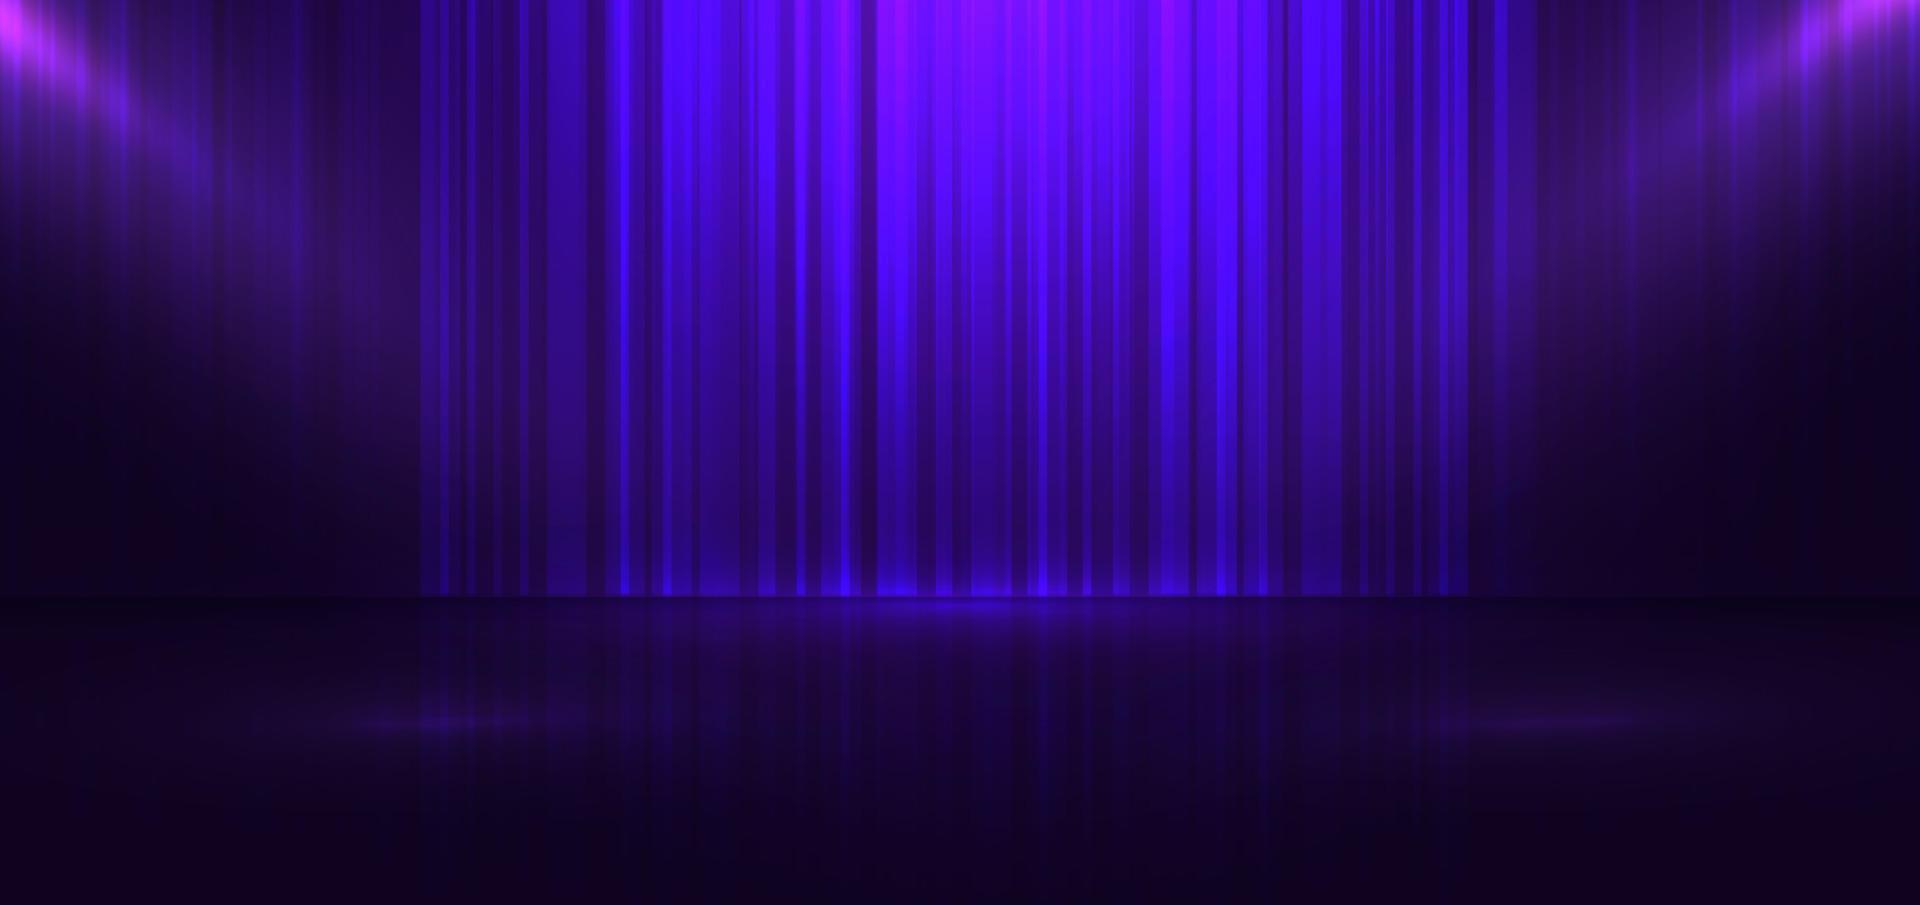 plataforma de palco azul e roxo com cena de cortina de holofotes. entretenimento de luxo elegante e chão vazio contra. vetor